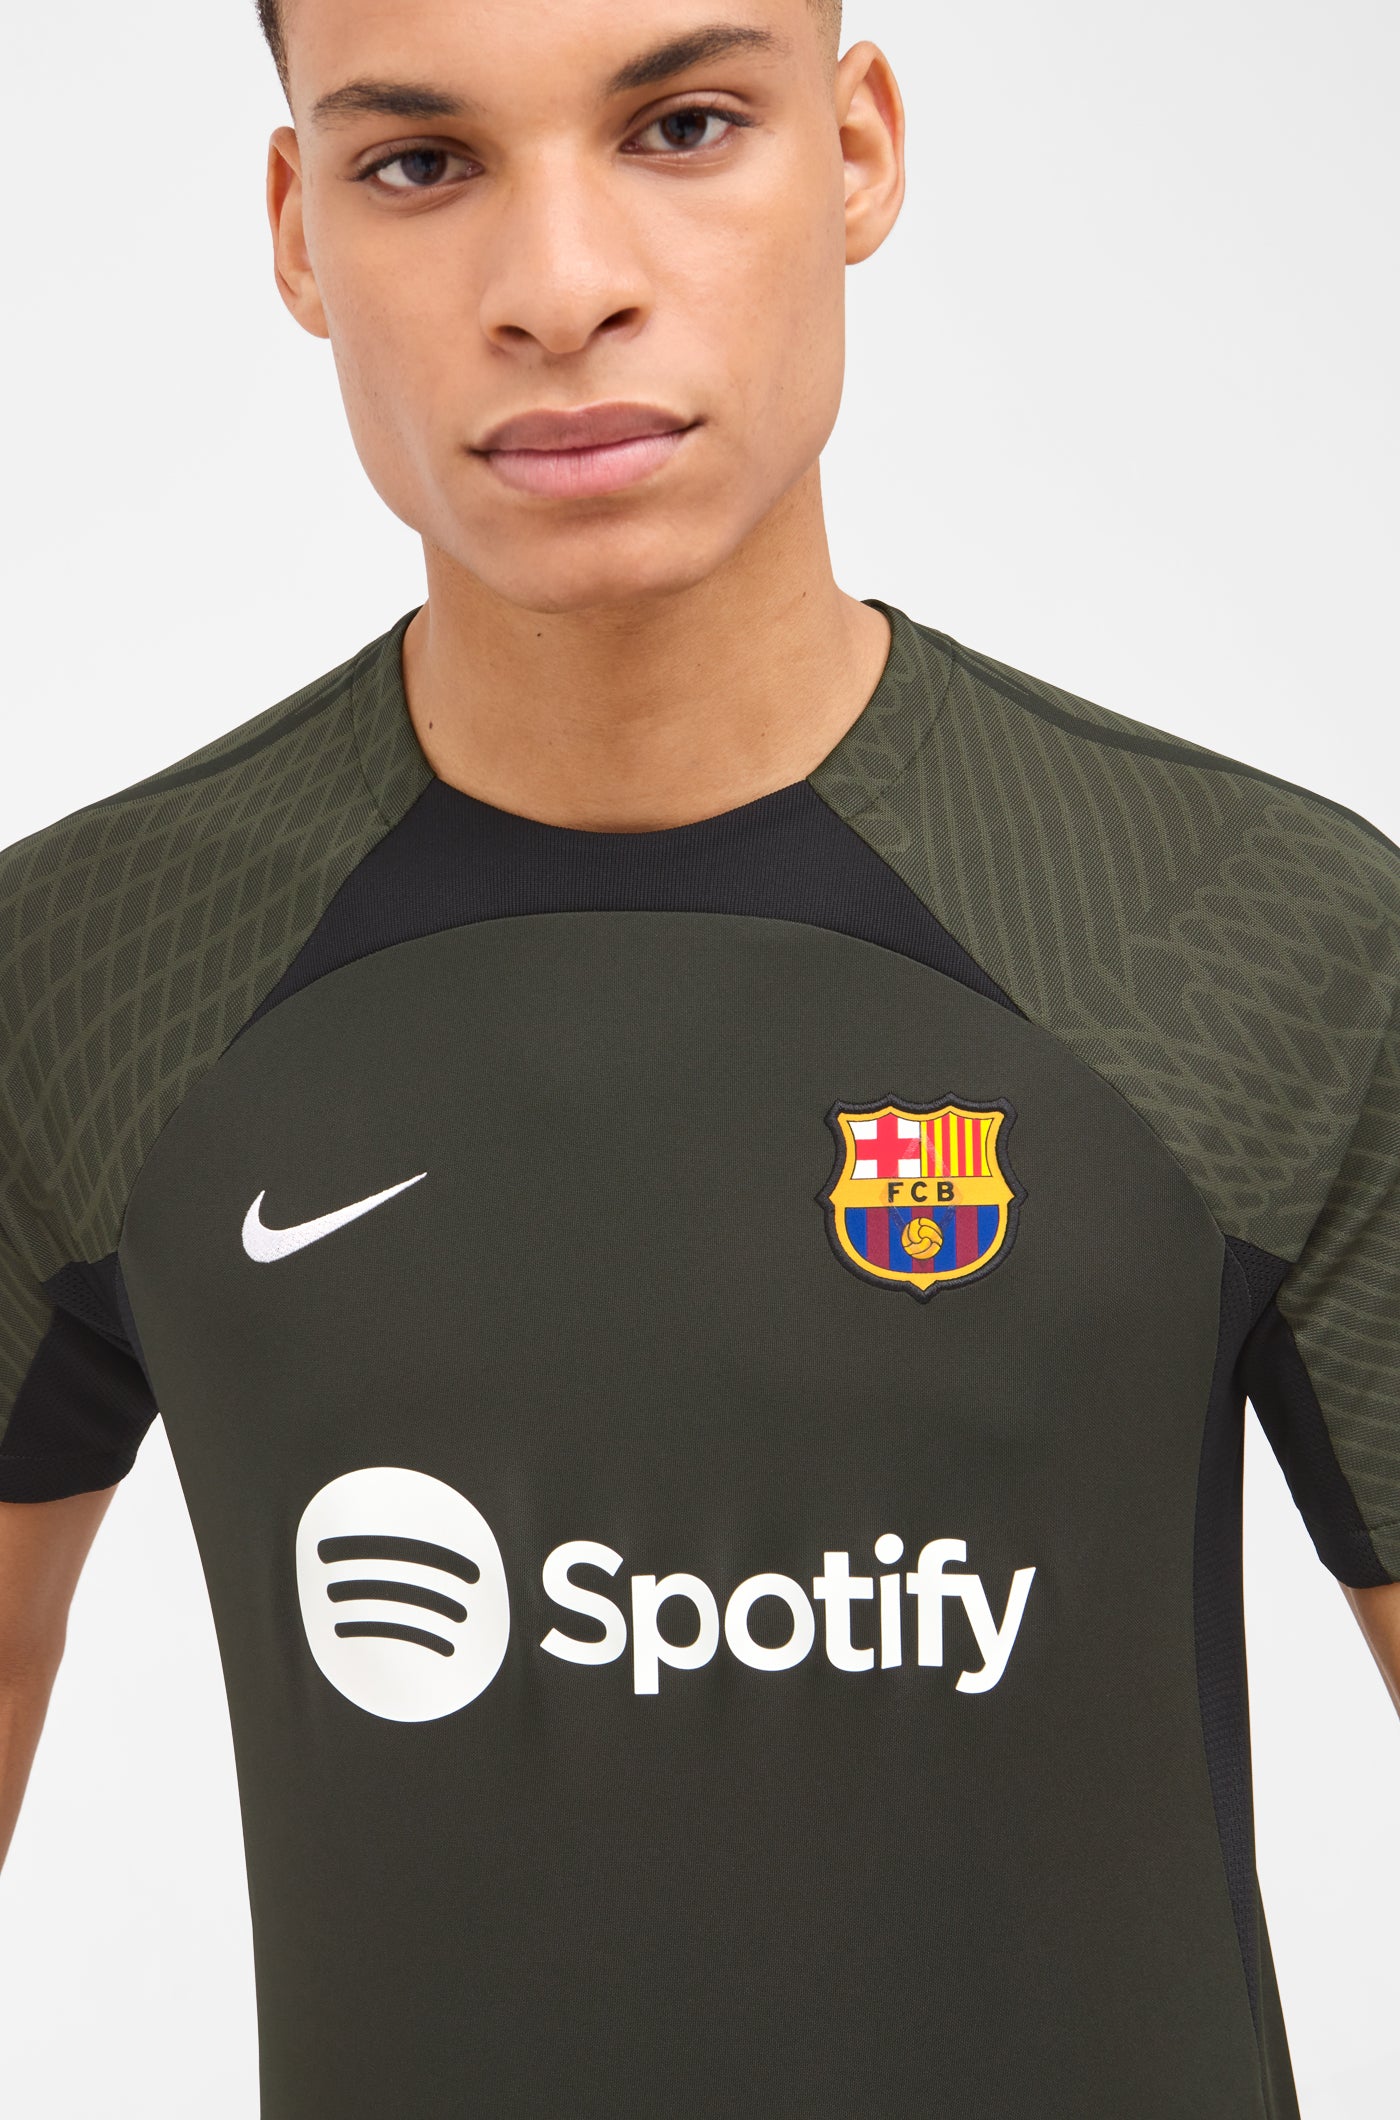 Entrainement homme – Barça Official Store Spotify Camp Nou